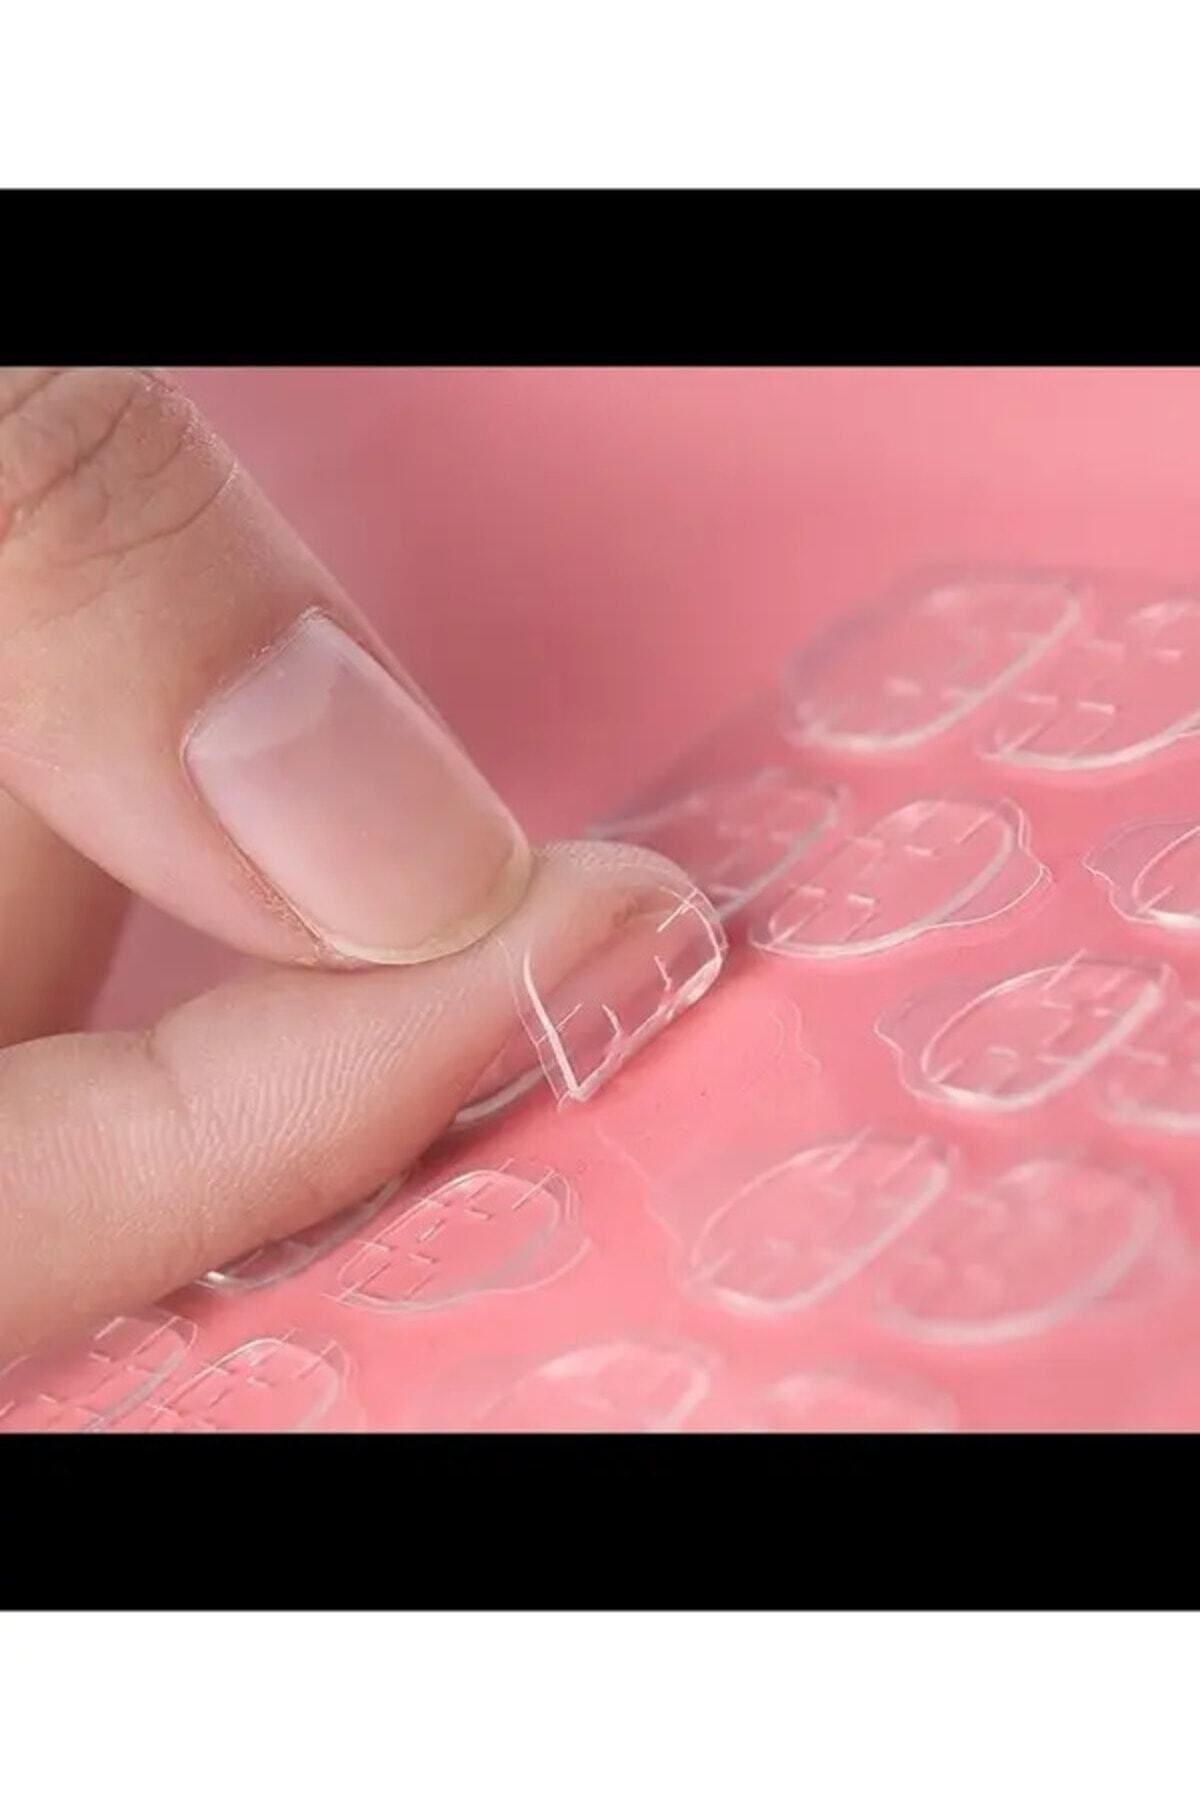 NİGİNA 240 Adet Takma Tırnak Yapıştırıcı Protez Yapıştırıcı Jel Sticker Tak Çıkar Yapıştırma Bandı